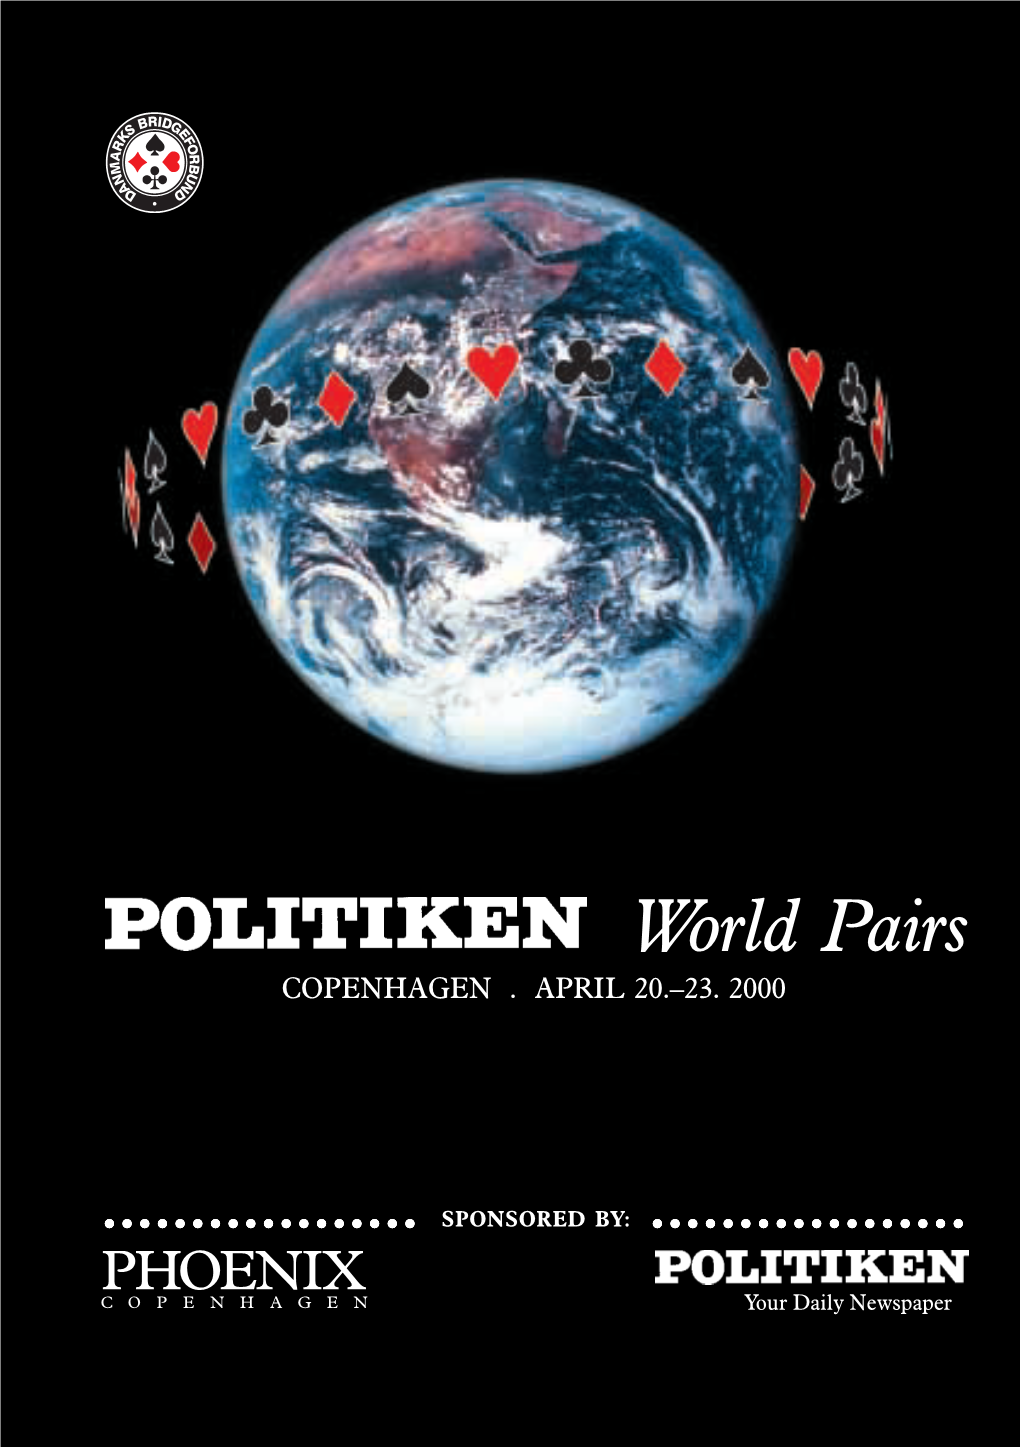 World Pairs 2000 Phoenix Copenhagen